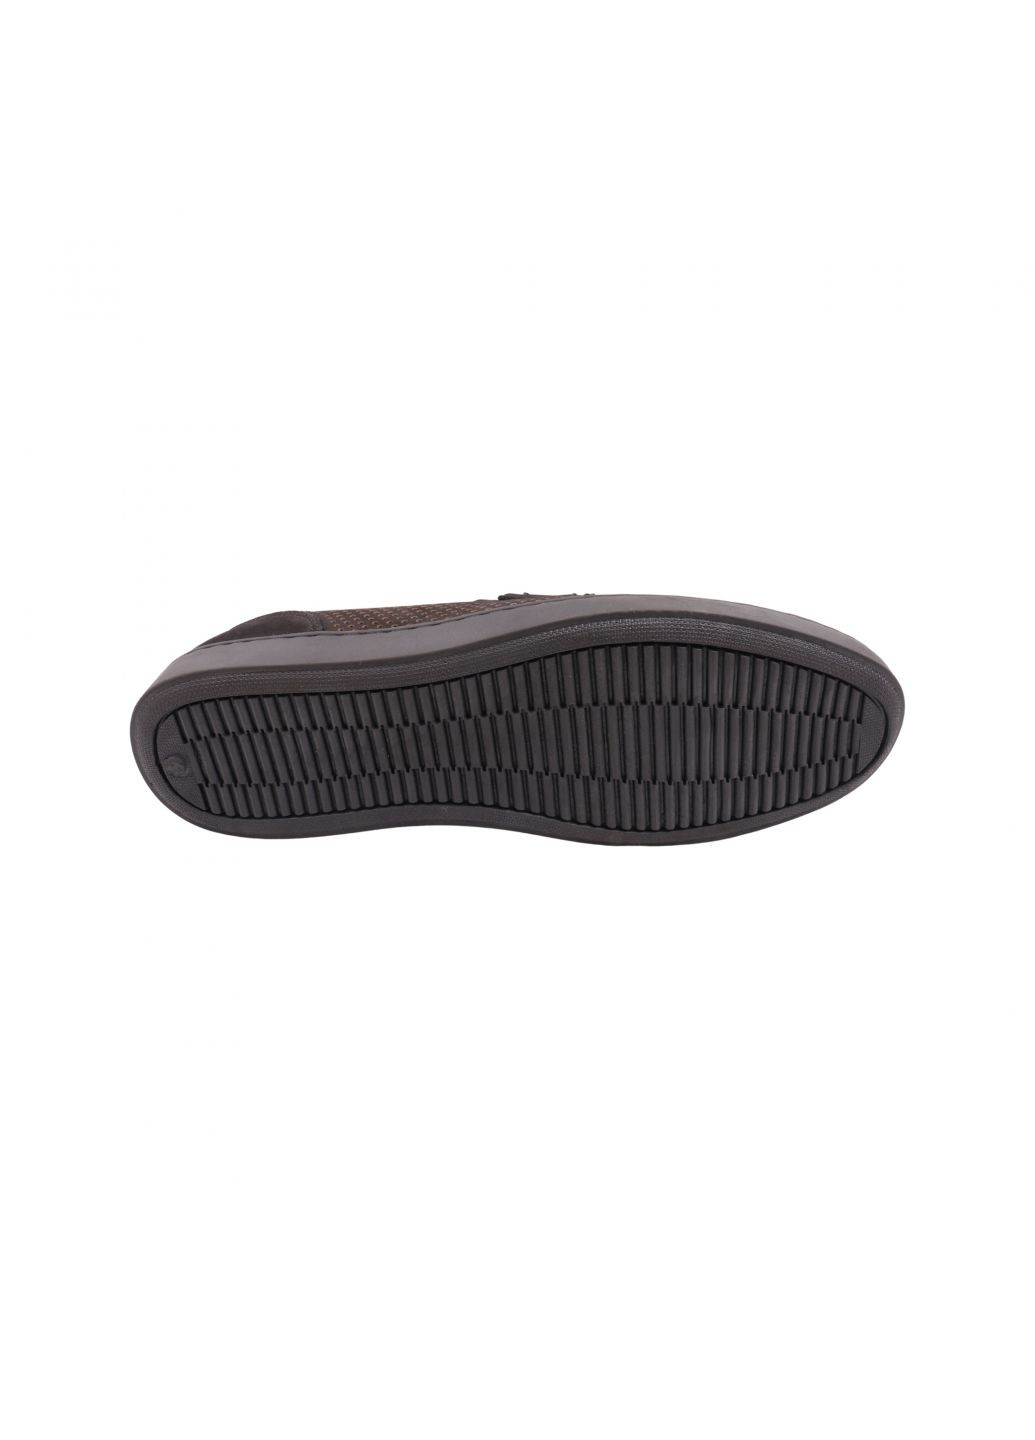 Туфлі чоловічі чорні натуральний нубук Copalo 256-23ltcp (257763238)